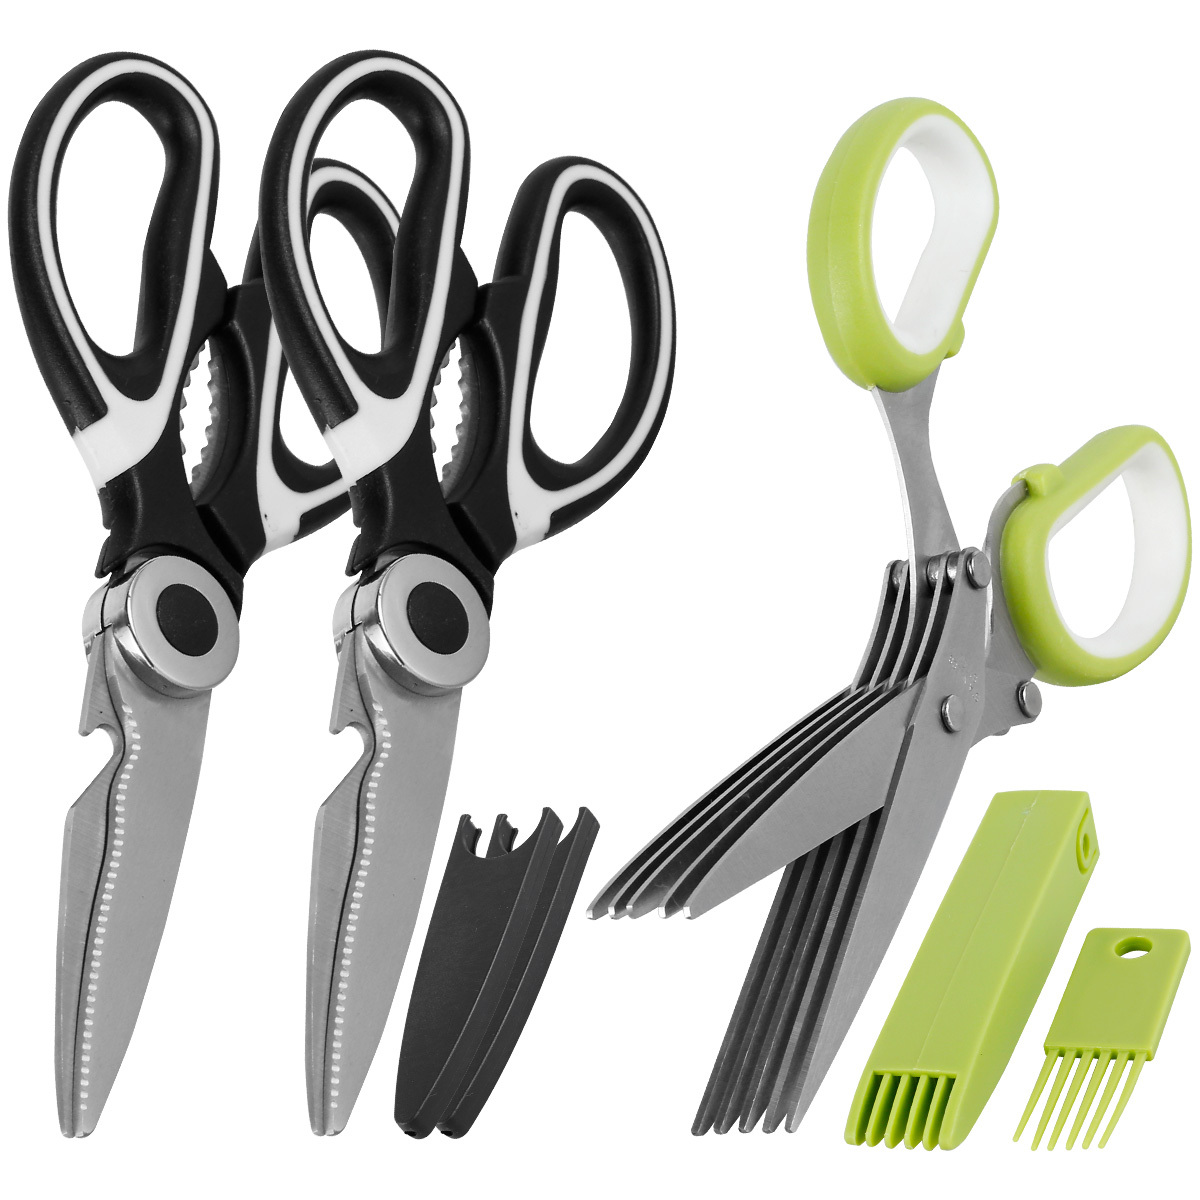 Kitchen Shears Multipurpose Stainless Steel Scissors for Bones Vegetables 